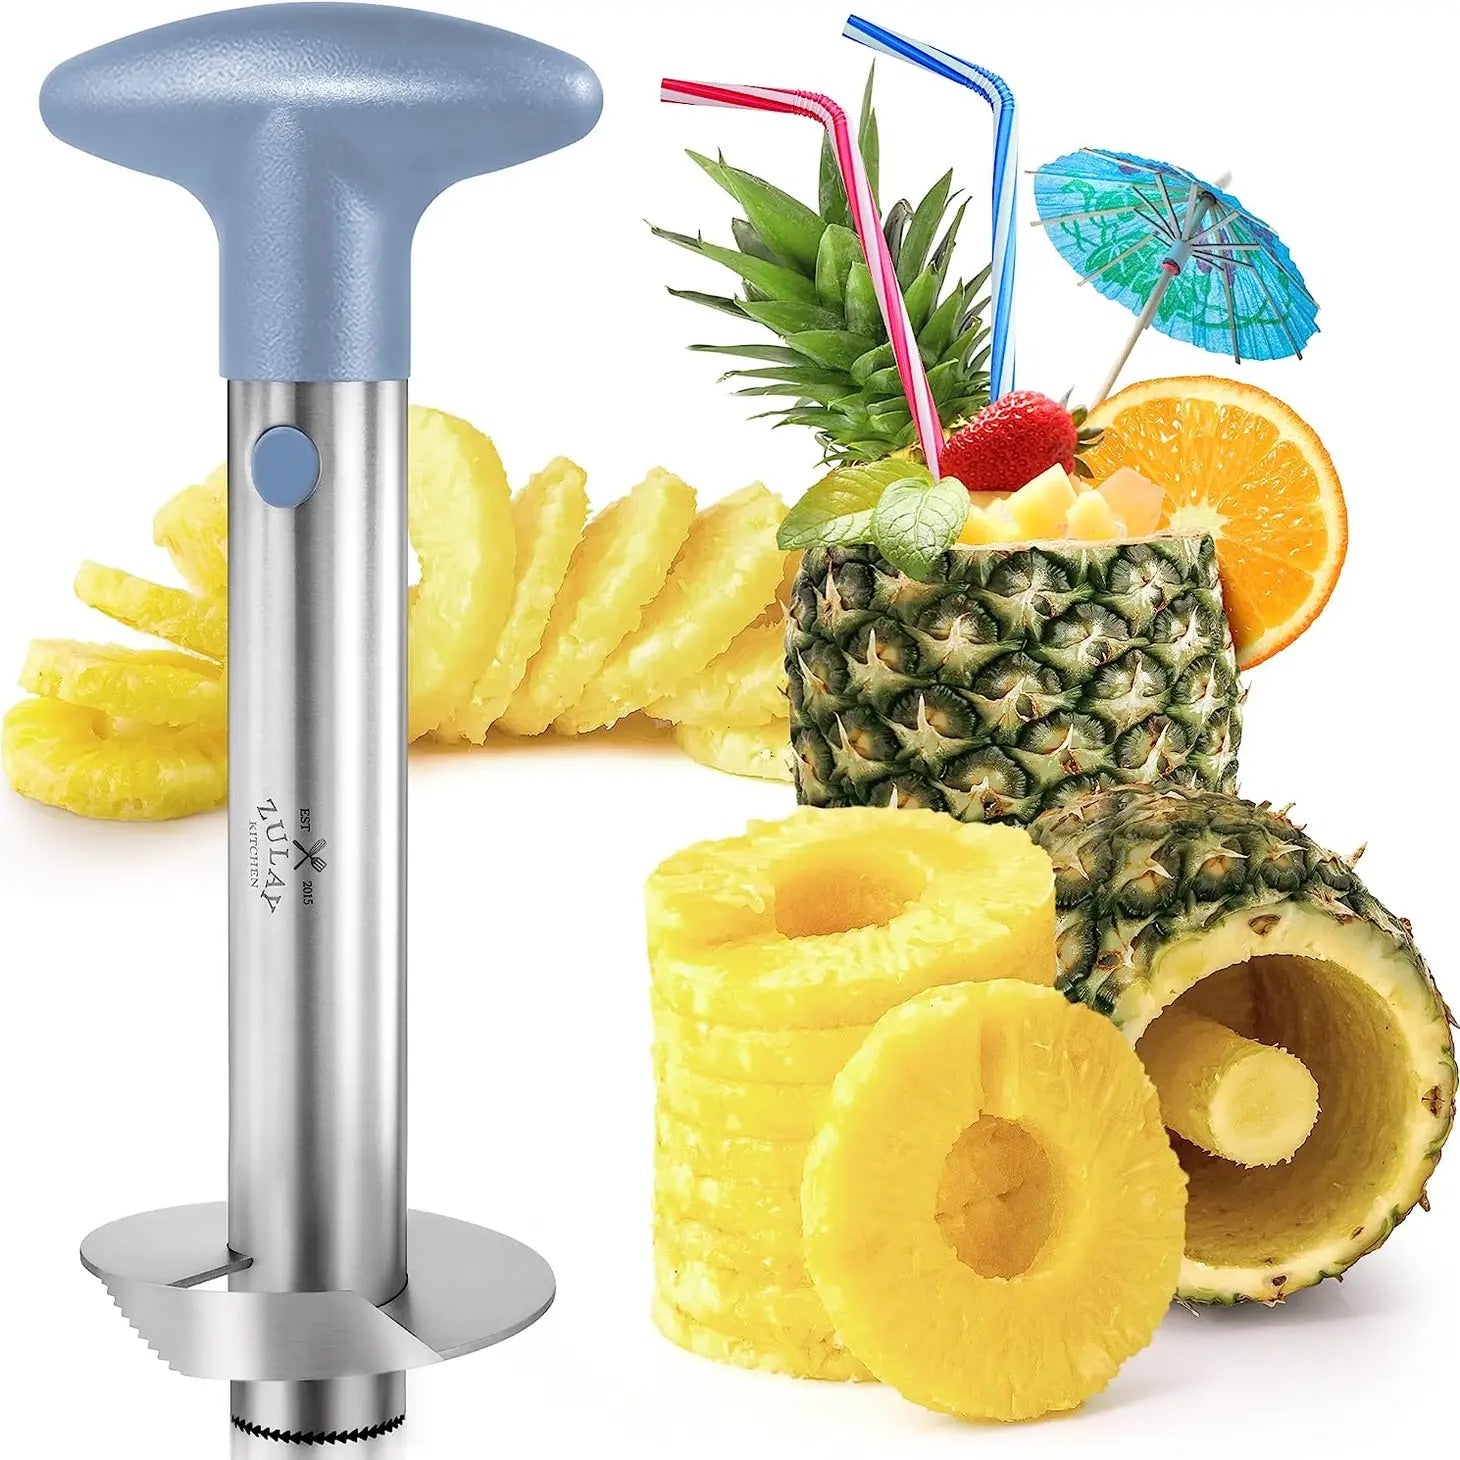 Pineapple Corer Slicer Tool